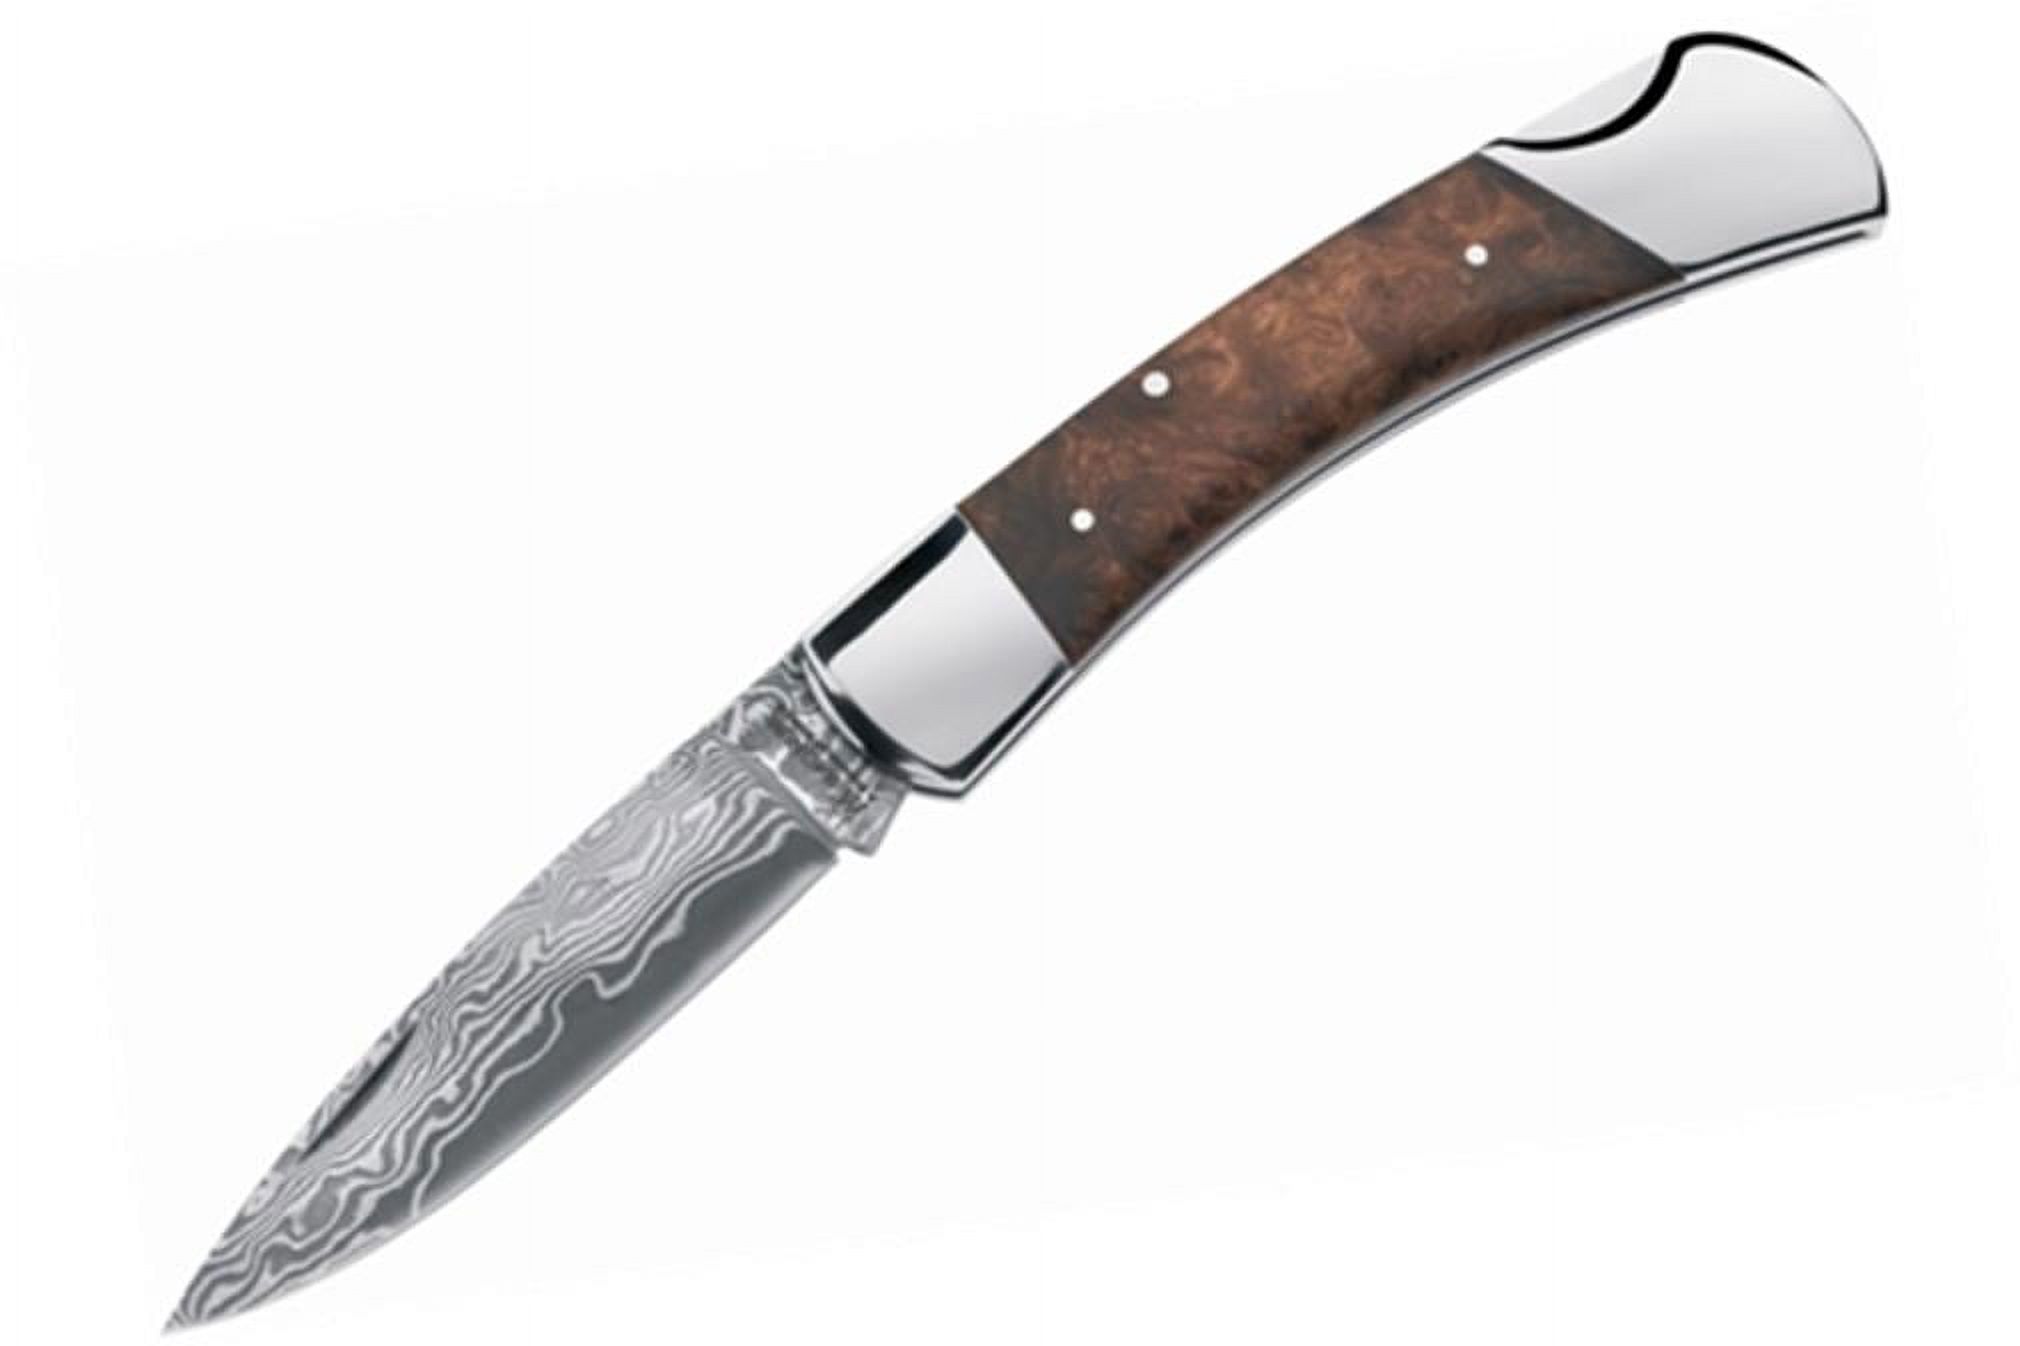 Magnum Lord Pocket Knife - image 2 of 2